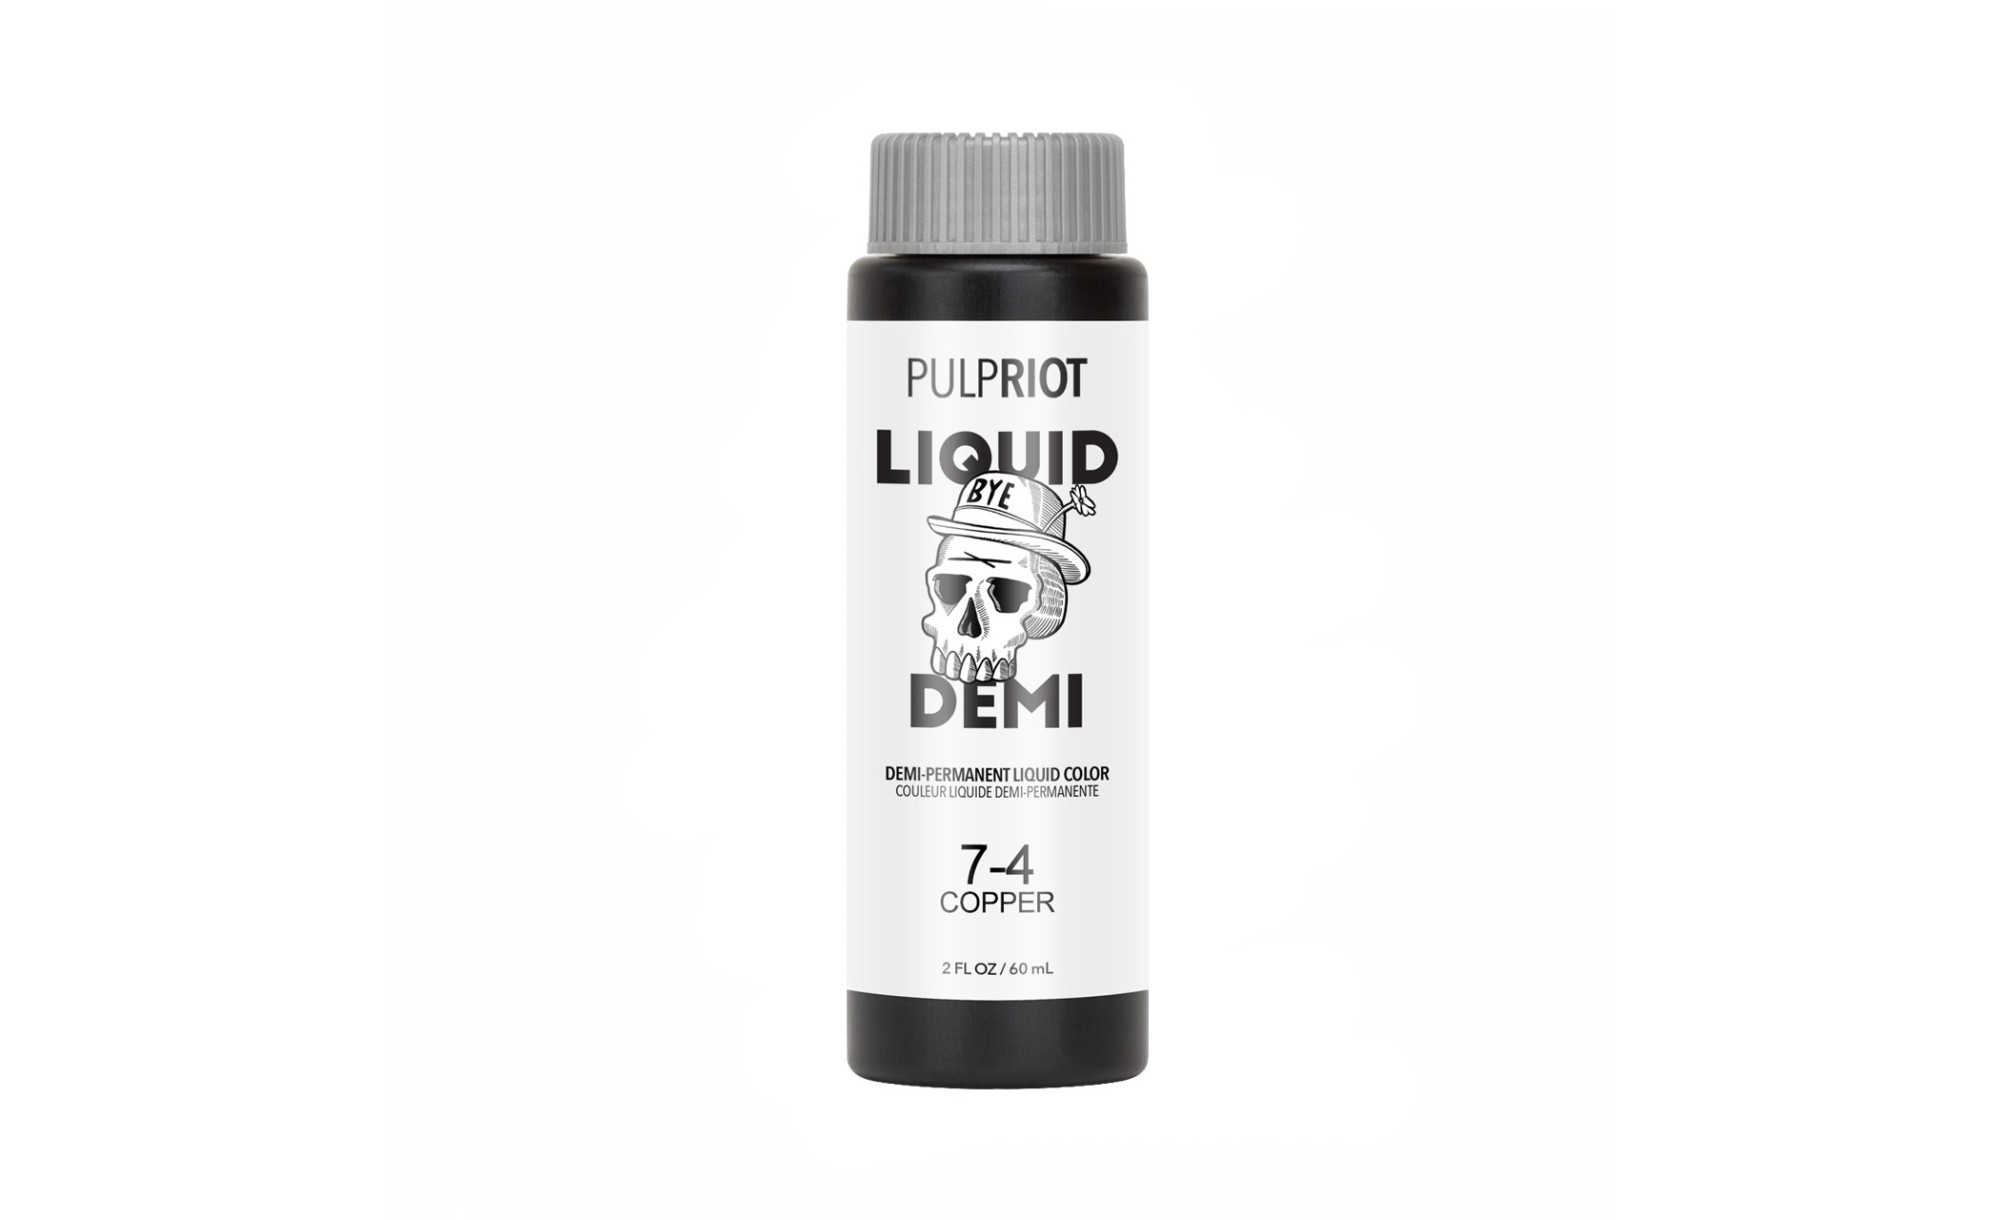 Pulp Riot Liquid Demi Copper 7.4